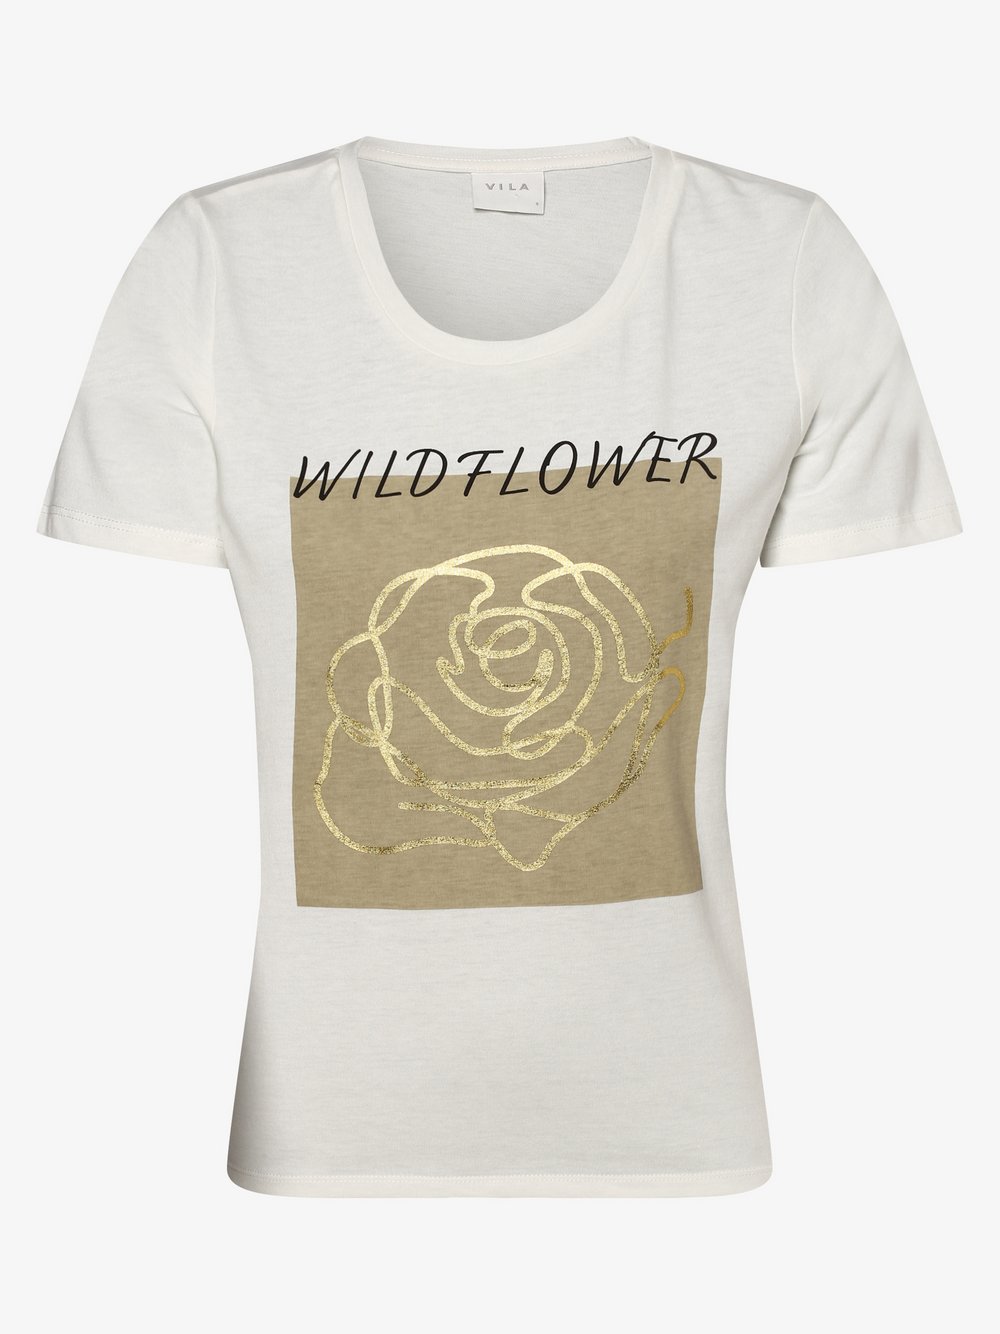 Vila - T-shirt damski – VIAvai, biały